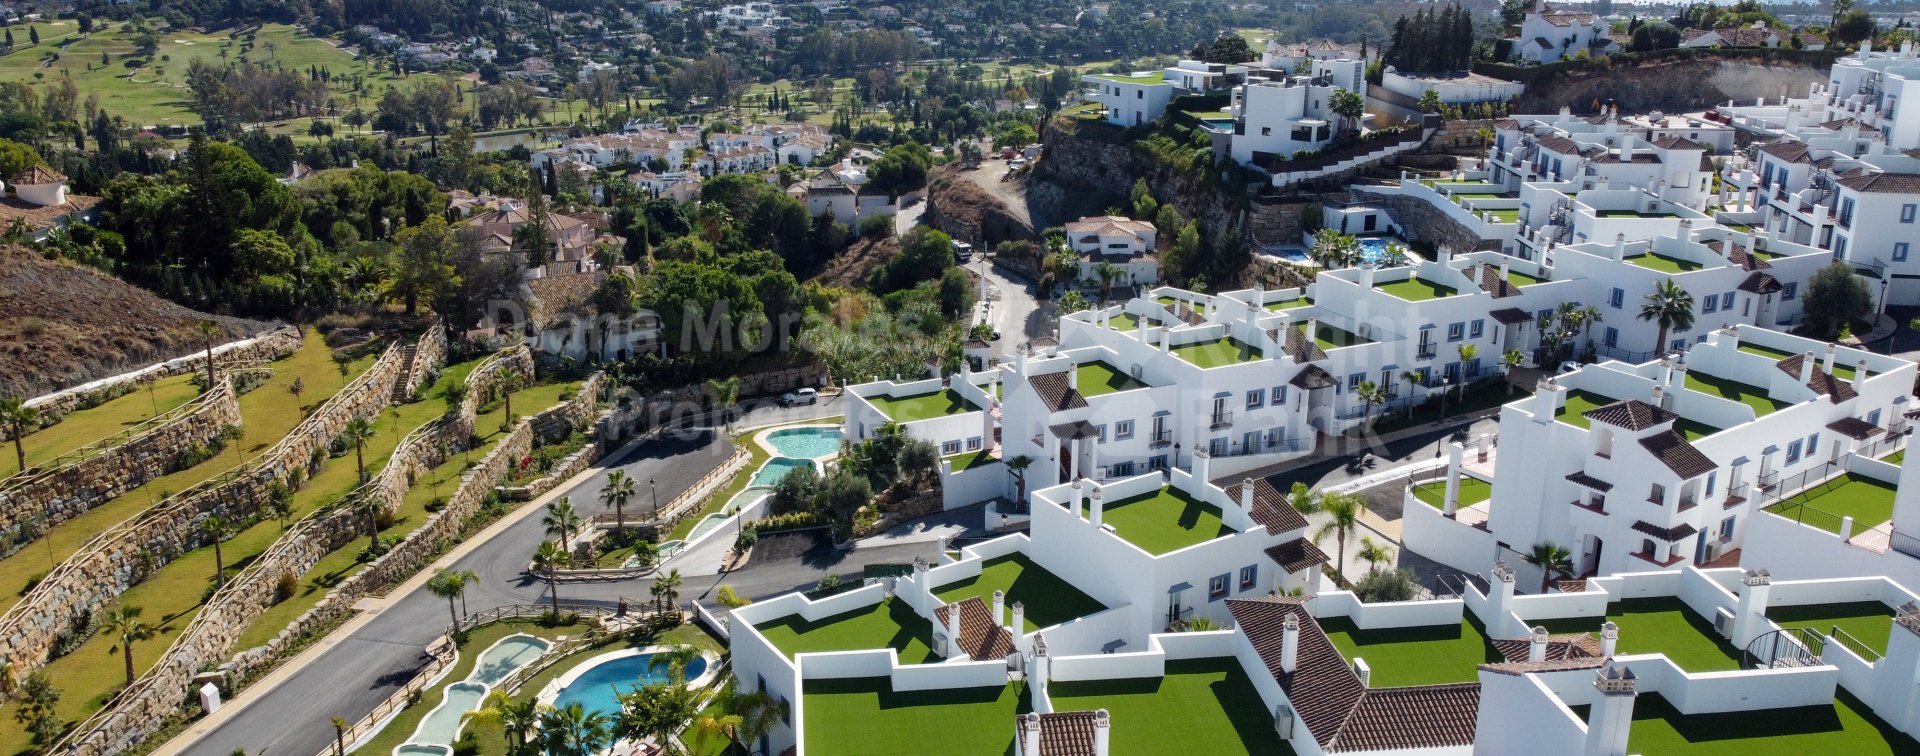 Paraiso Pueblo, Apartamentos en pueblo blanco andaluz con amplia gama de comodidades